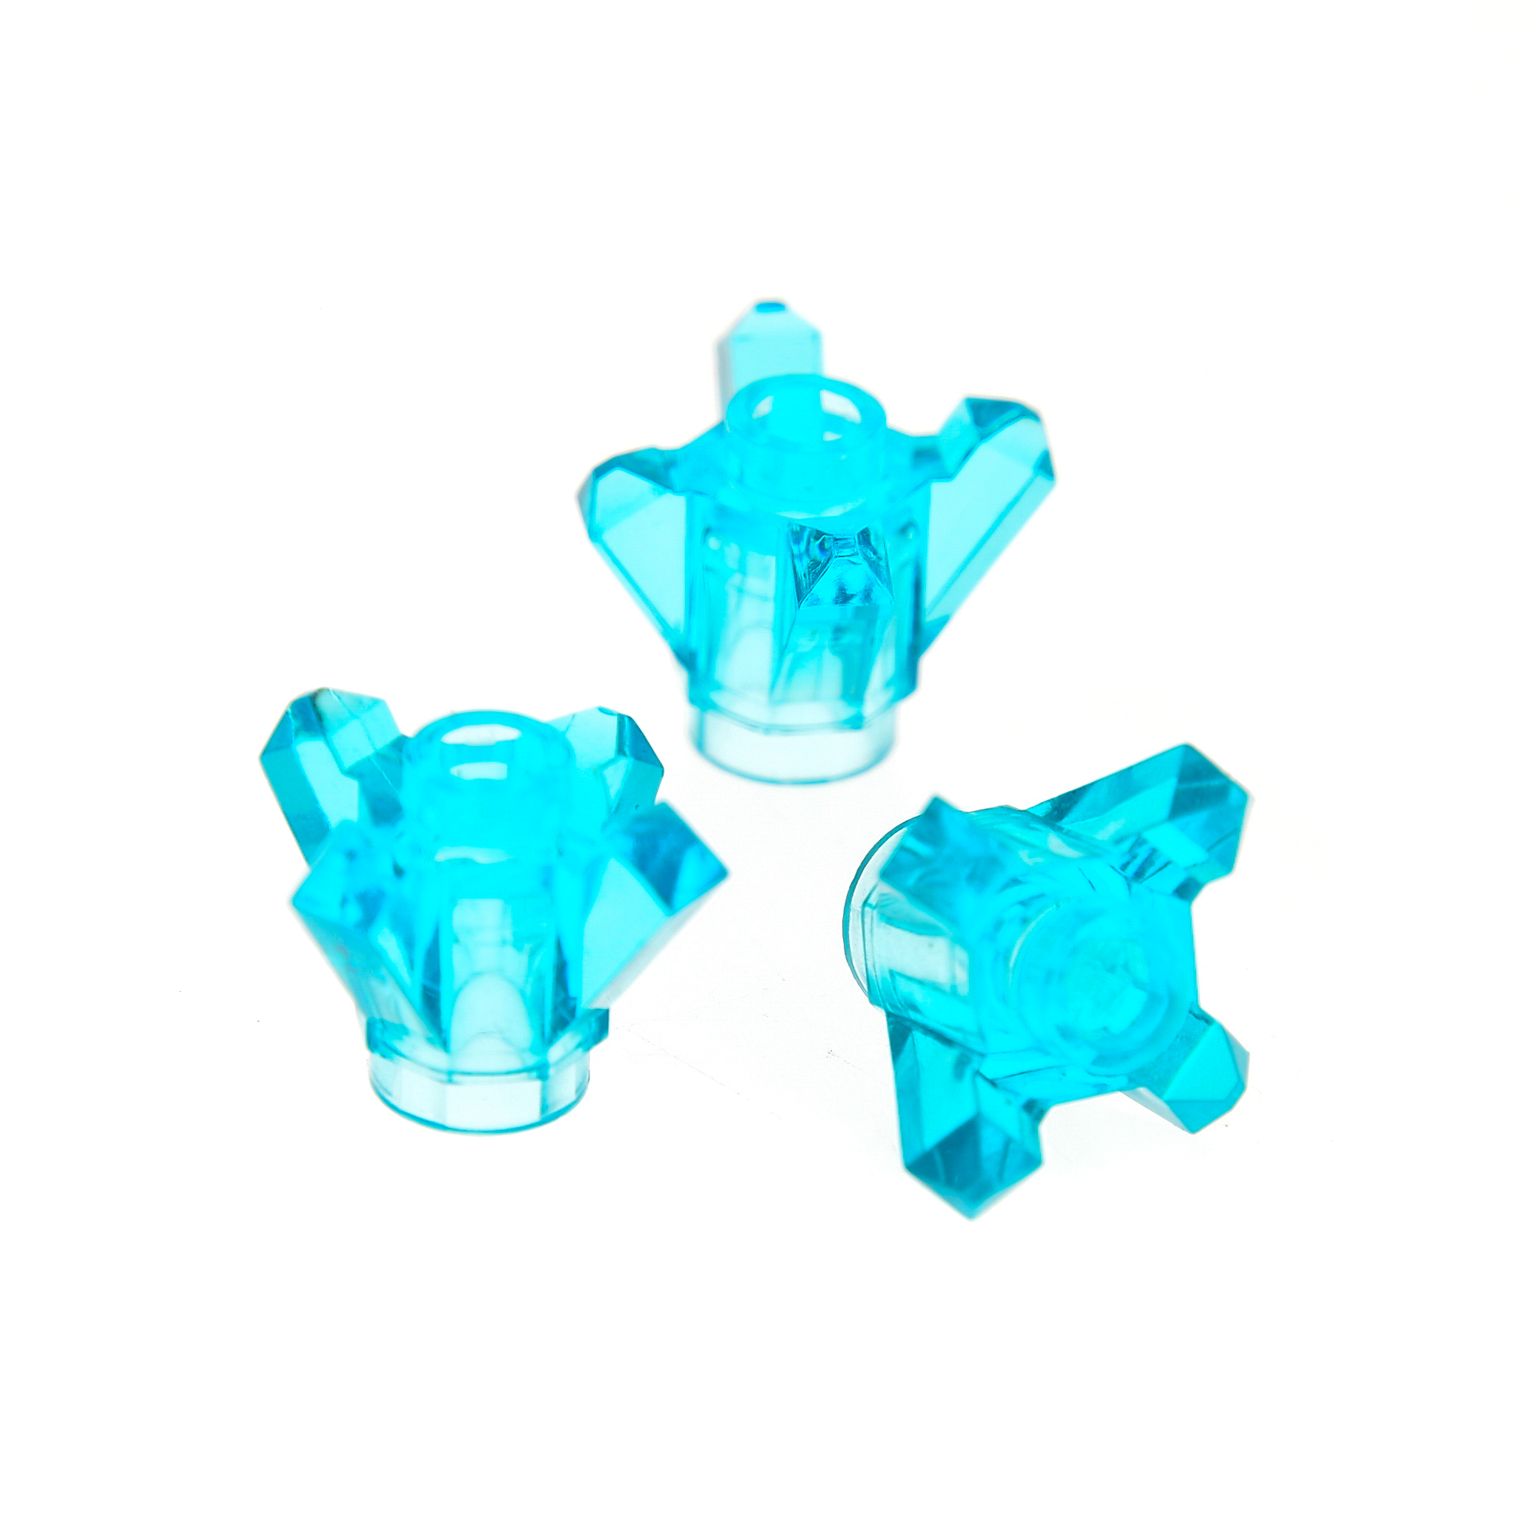 Lego 5 blau-mittel-transparente Kristalle mit 5 Zacken neu rar 